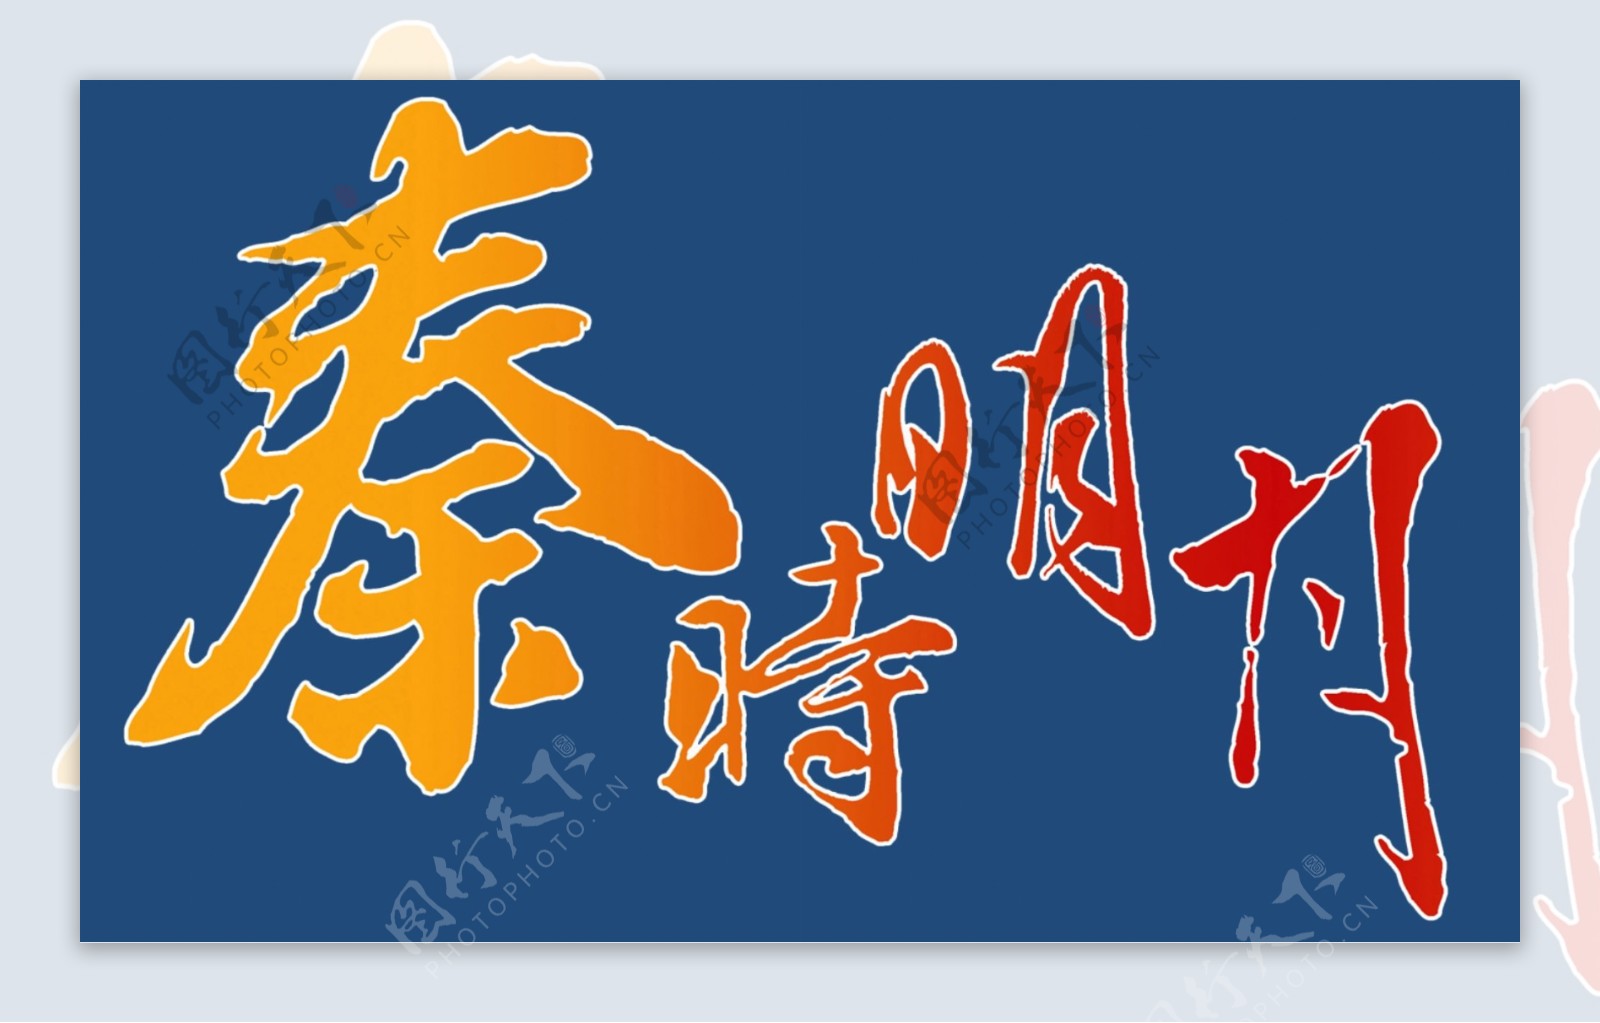 秦时明月logo